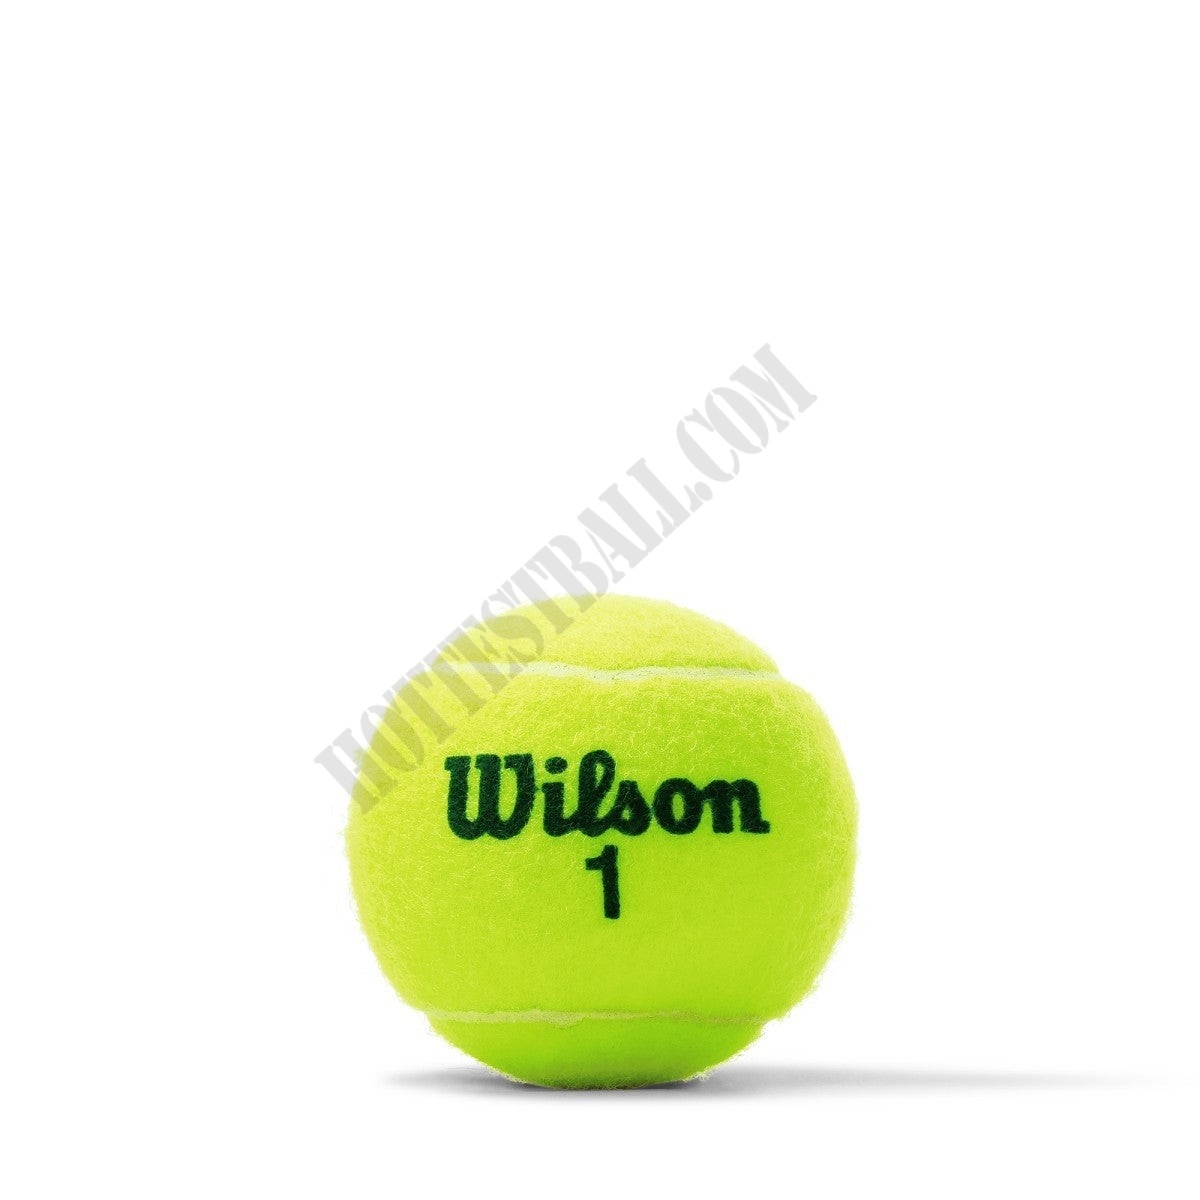 US Open Green Tournament Transition Tennis Balls - 24 Cans (72 Balls) - Wilson Discount Store - -2